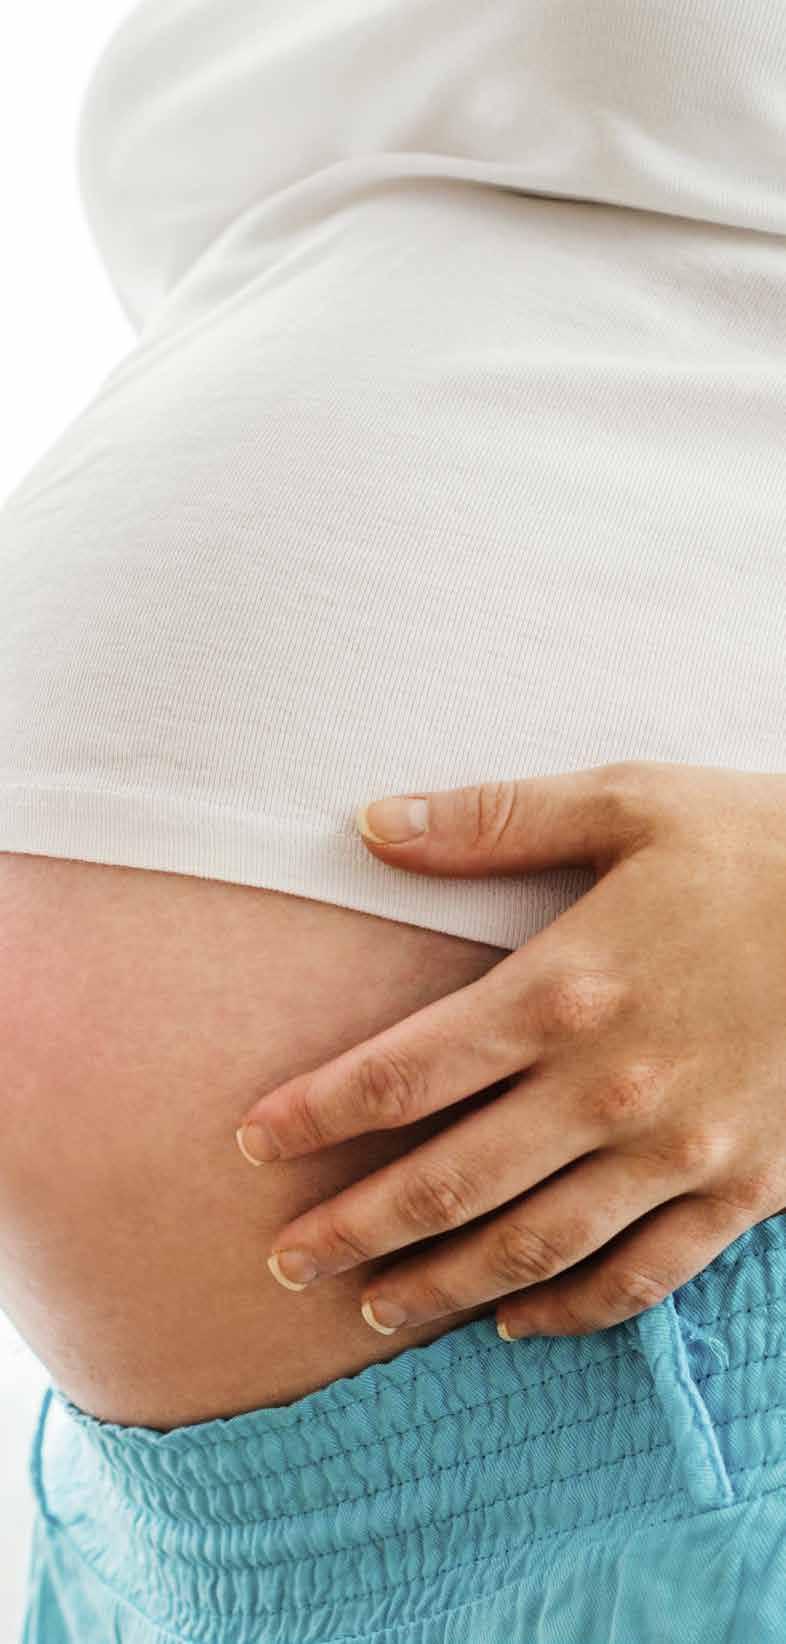 EUROPÄISCHES SCHWANGERSCHAFTS- REGISTER (EURAP) Um Informationen darüber zu erhalten, ob die Einnahme von Antiepileptika in der Schwangerschaft zu Fehlbildungen oder Entwicklungsstörungen führen,